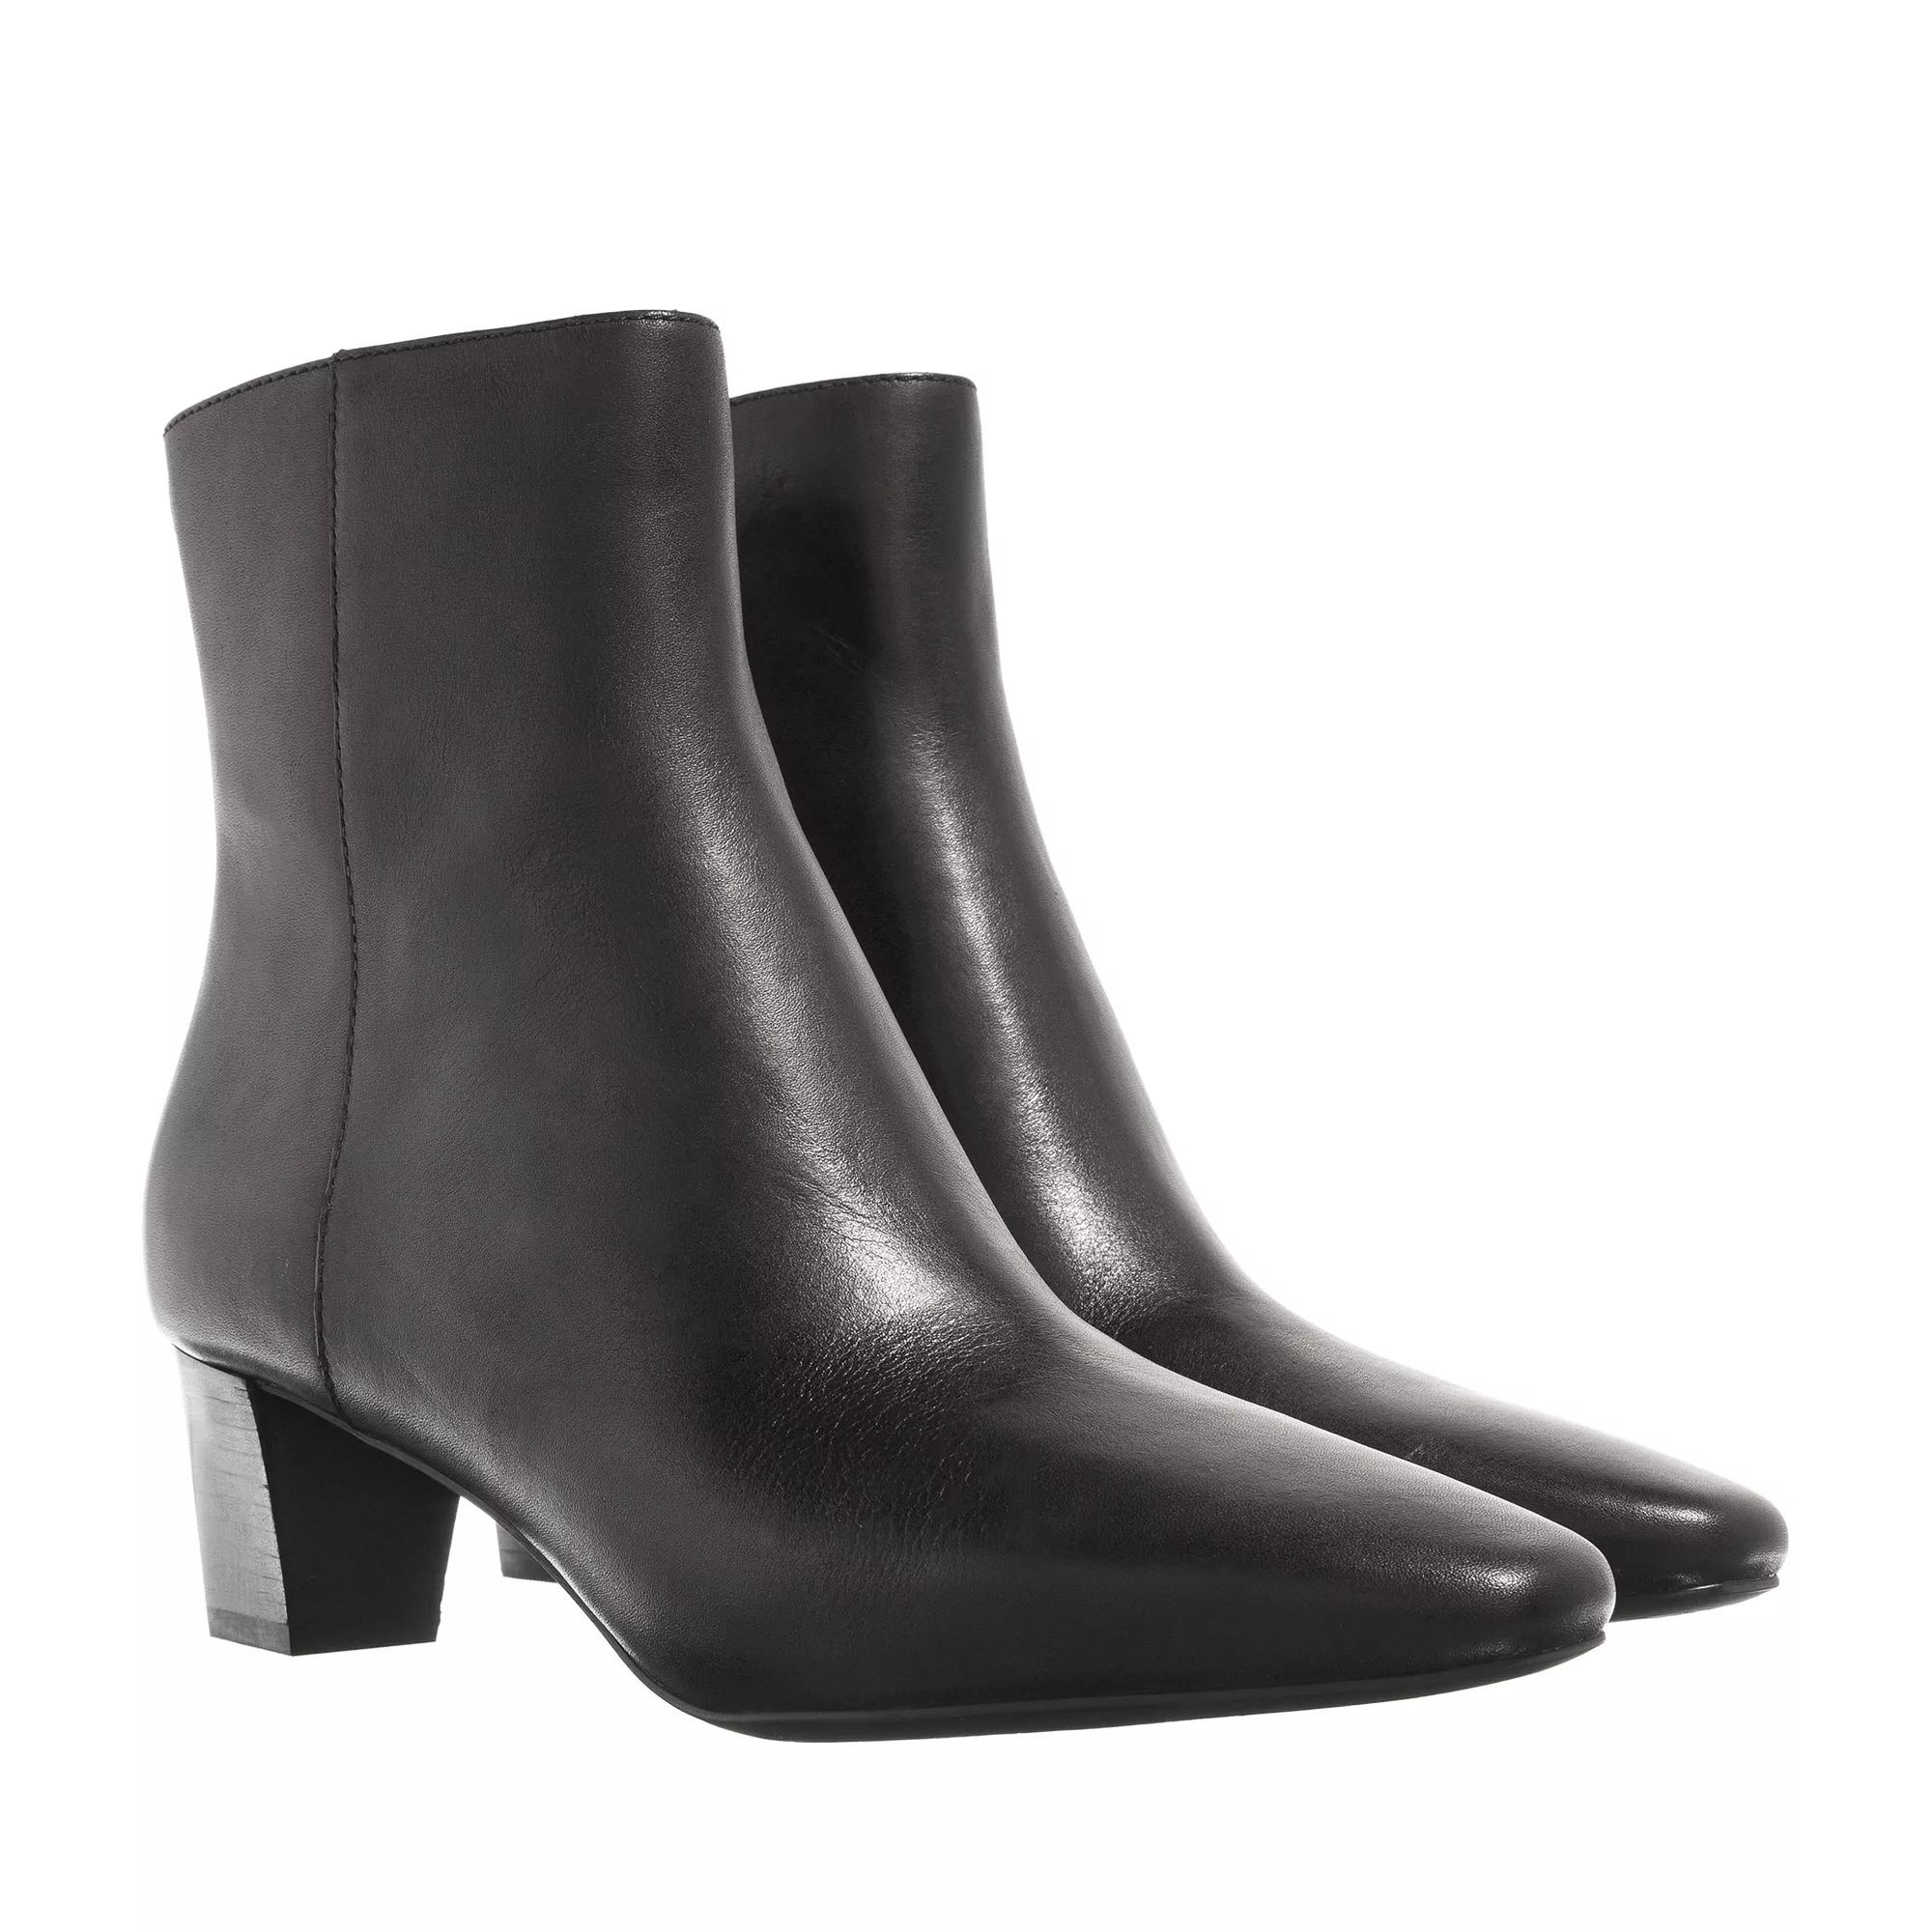 Lauren Ralph Lauren Willa Boots Black | Ankle Boot | fashionette